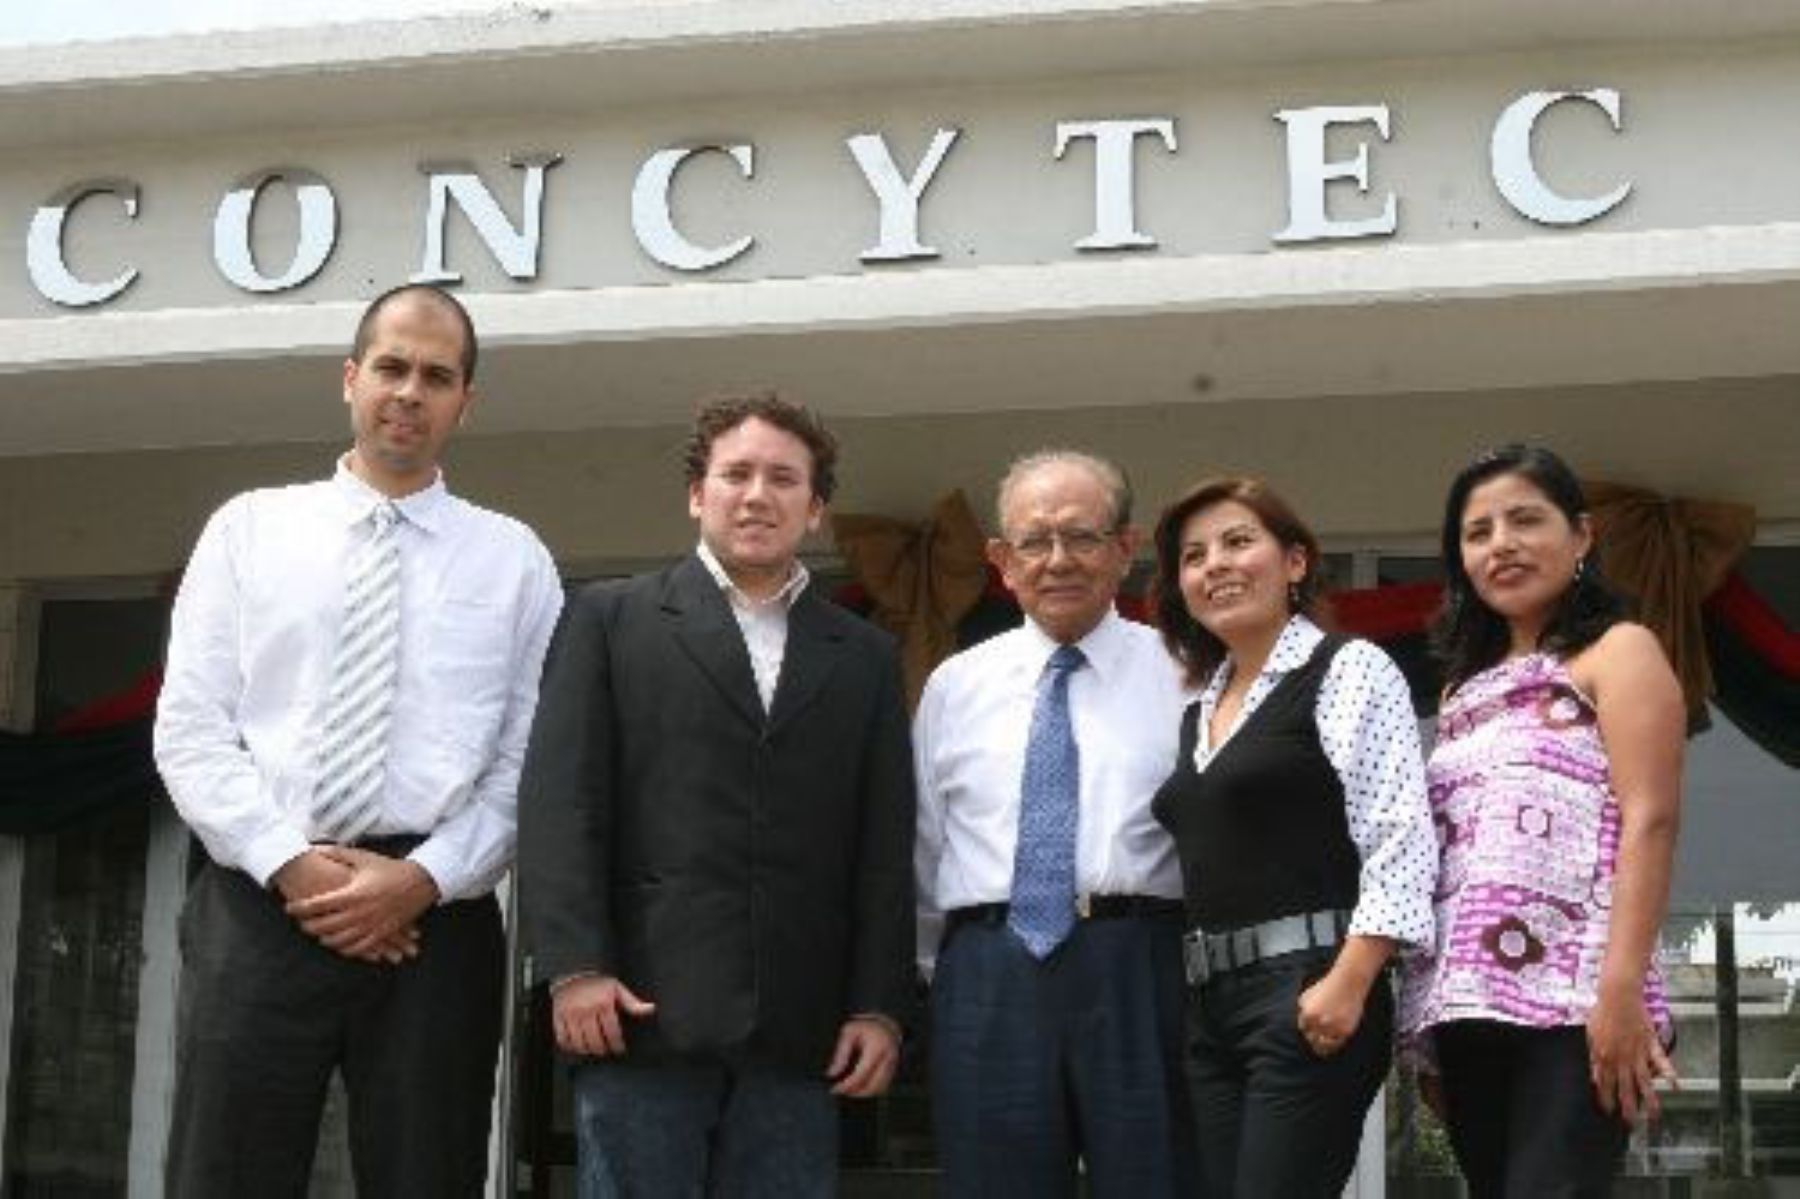 Estudiosos. Fabián Uriarte, Marvin Bayron, junto con el presidente de Concytec, Augusto Mellado, además de Karen Chumbimuni y Maritza Condori reunidos en encuentro científico.